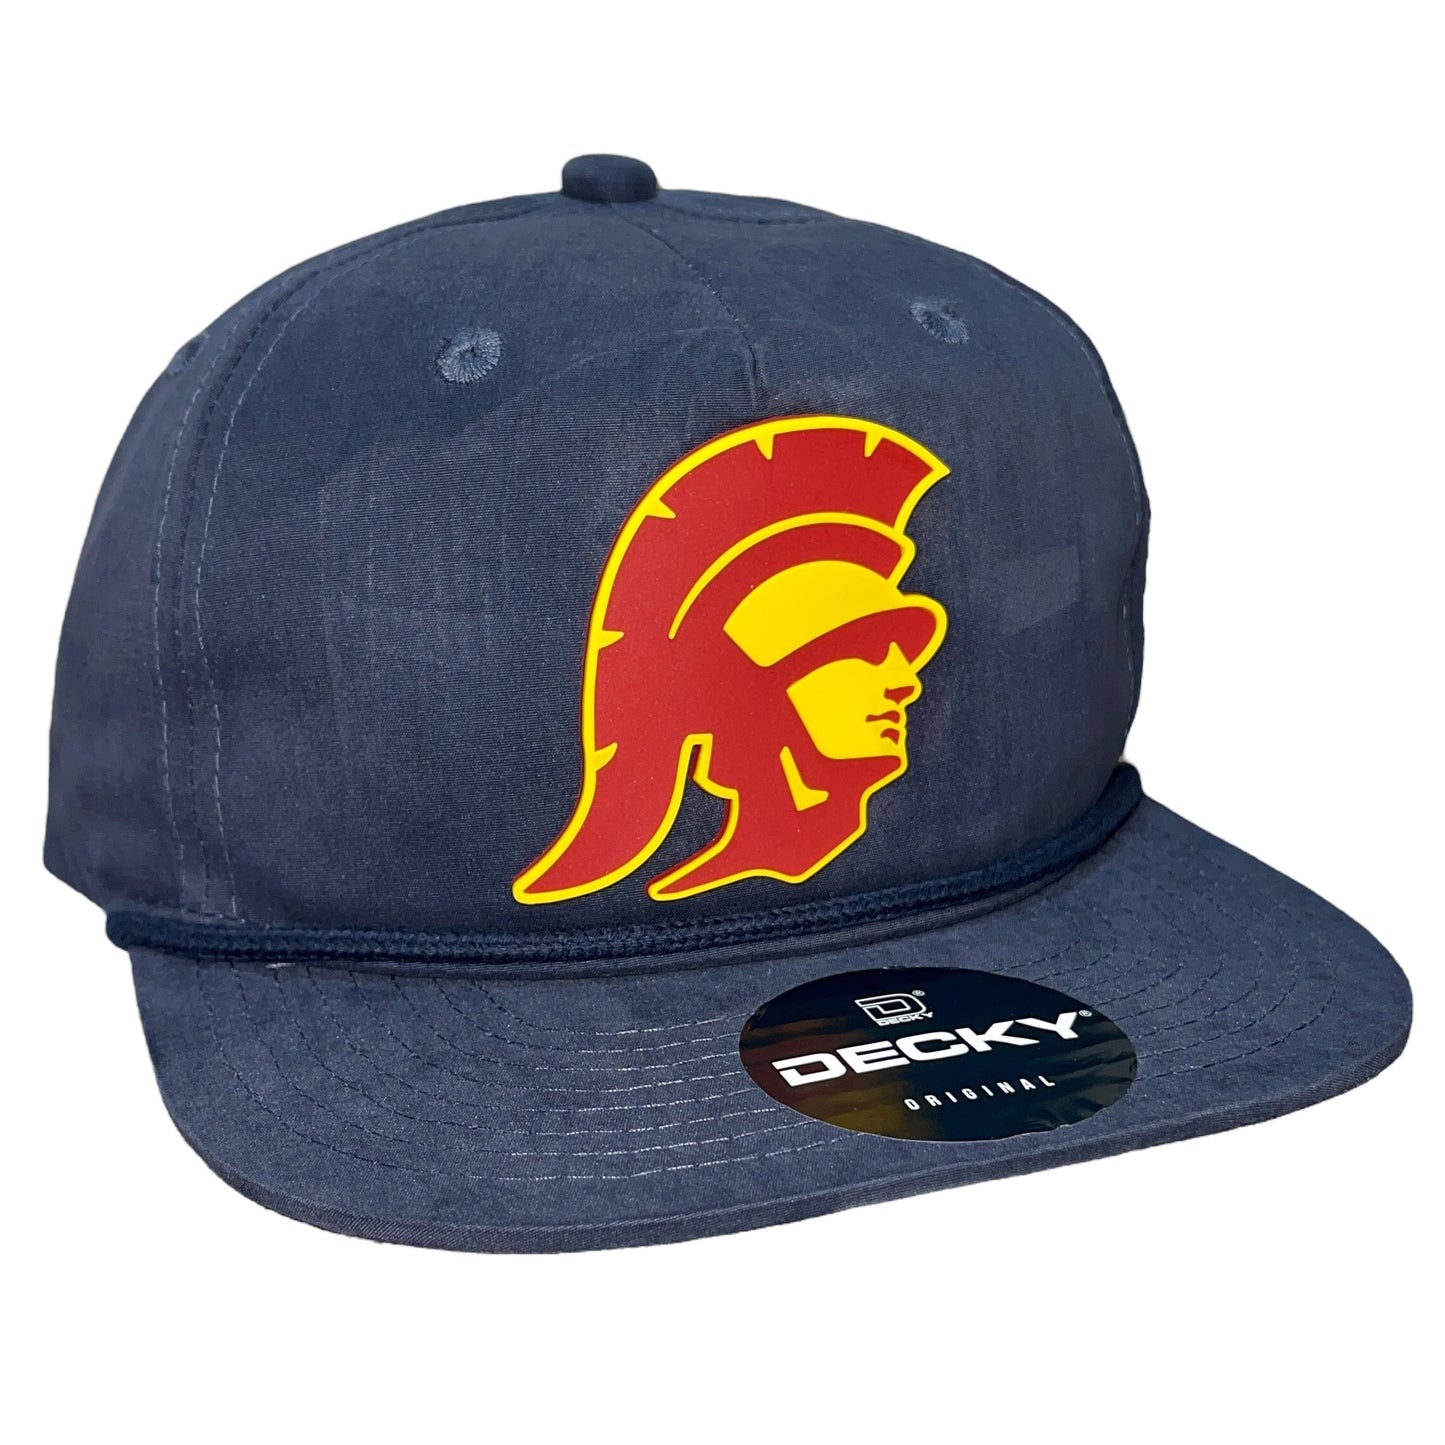 USC Trojans 3D Classic Rope Hat- Navy - Ten Gallon Hat Co.